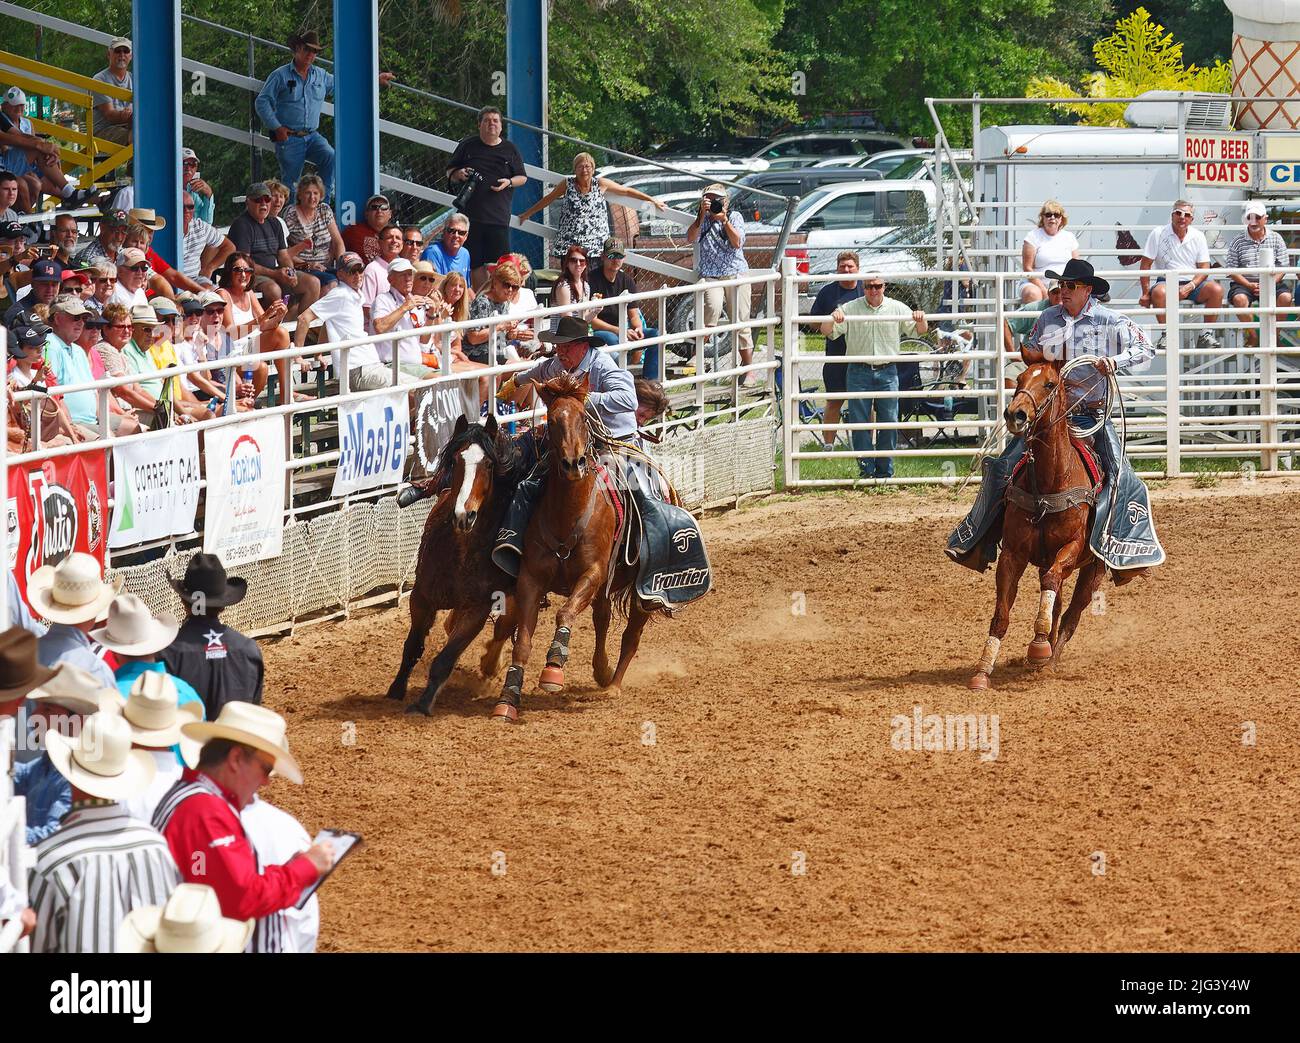 rodeo, homme corraing cheval, travail, stands, spectateurs, concours, compétition, animal, personnes, foule, Floride ; Arcadia ; FL Banque D'Images